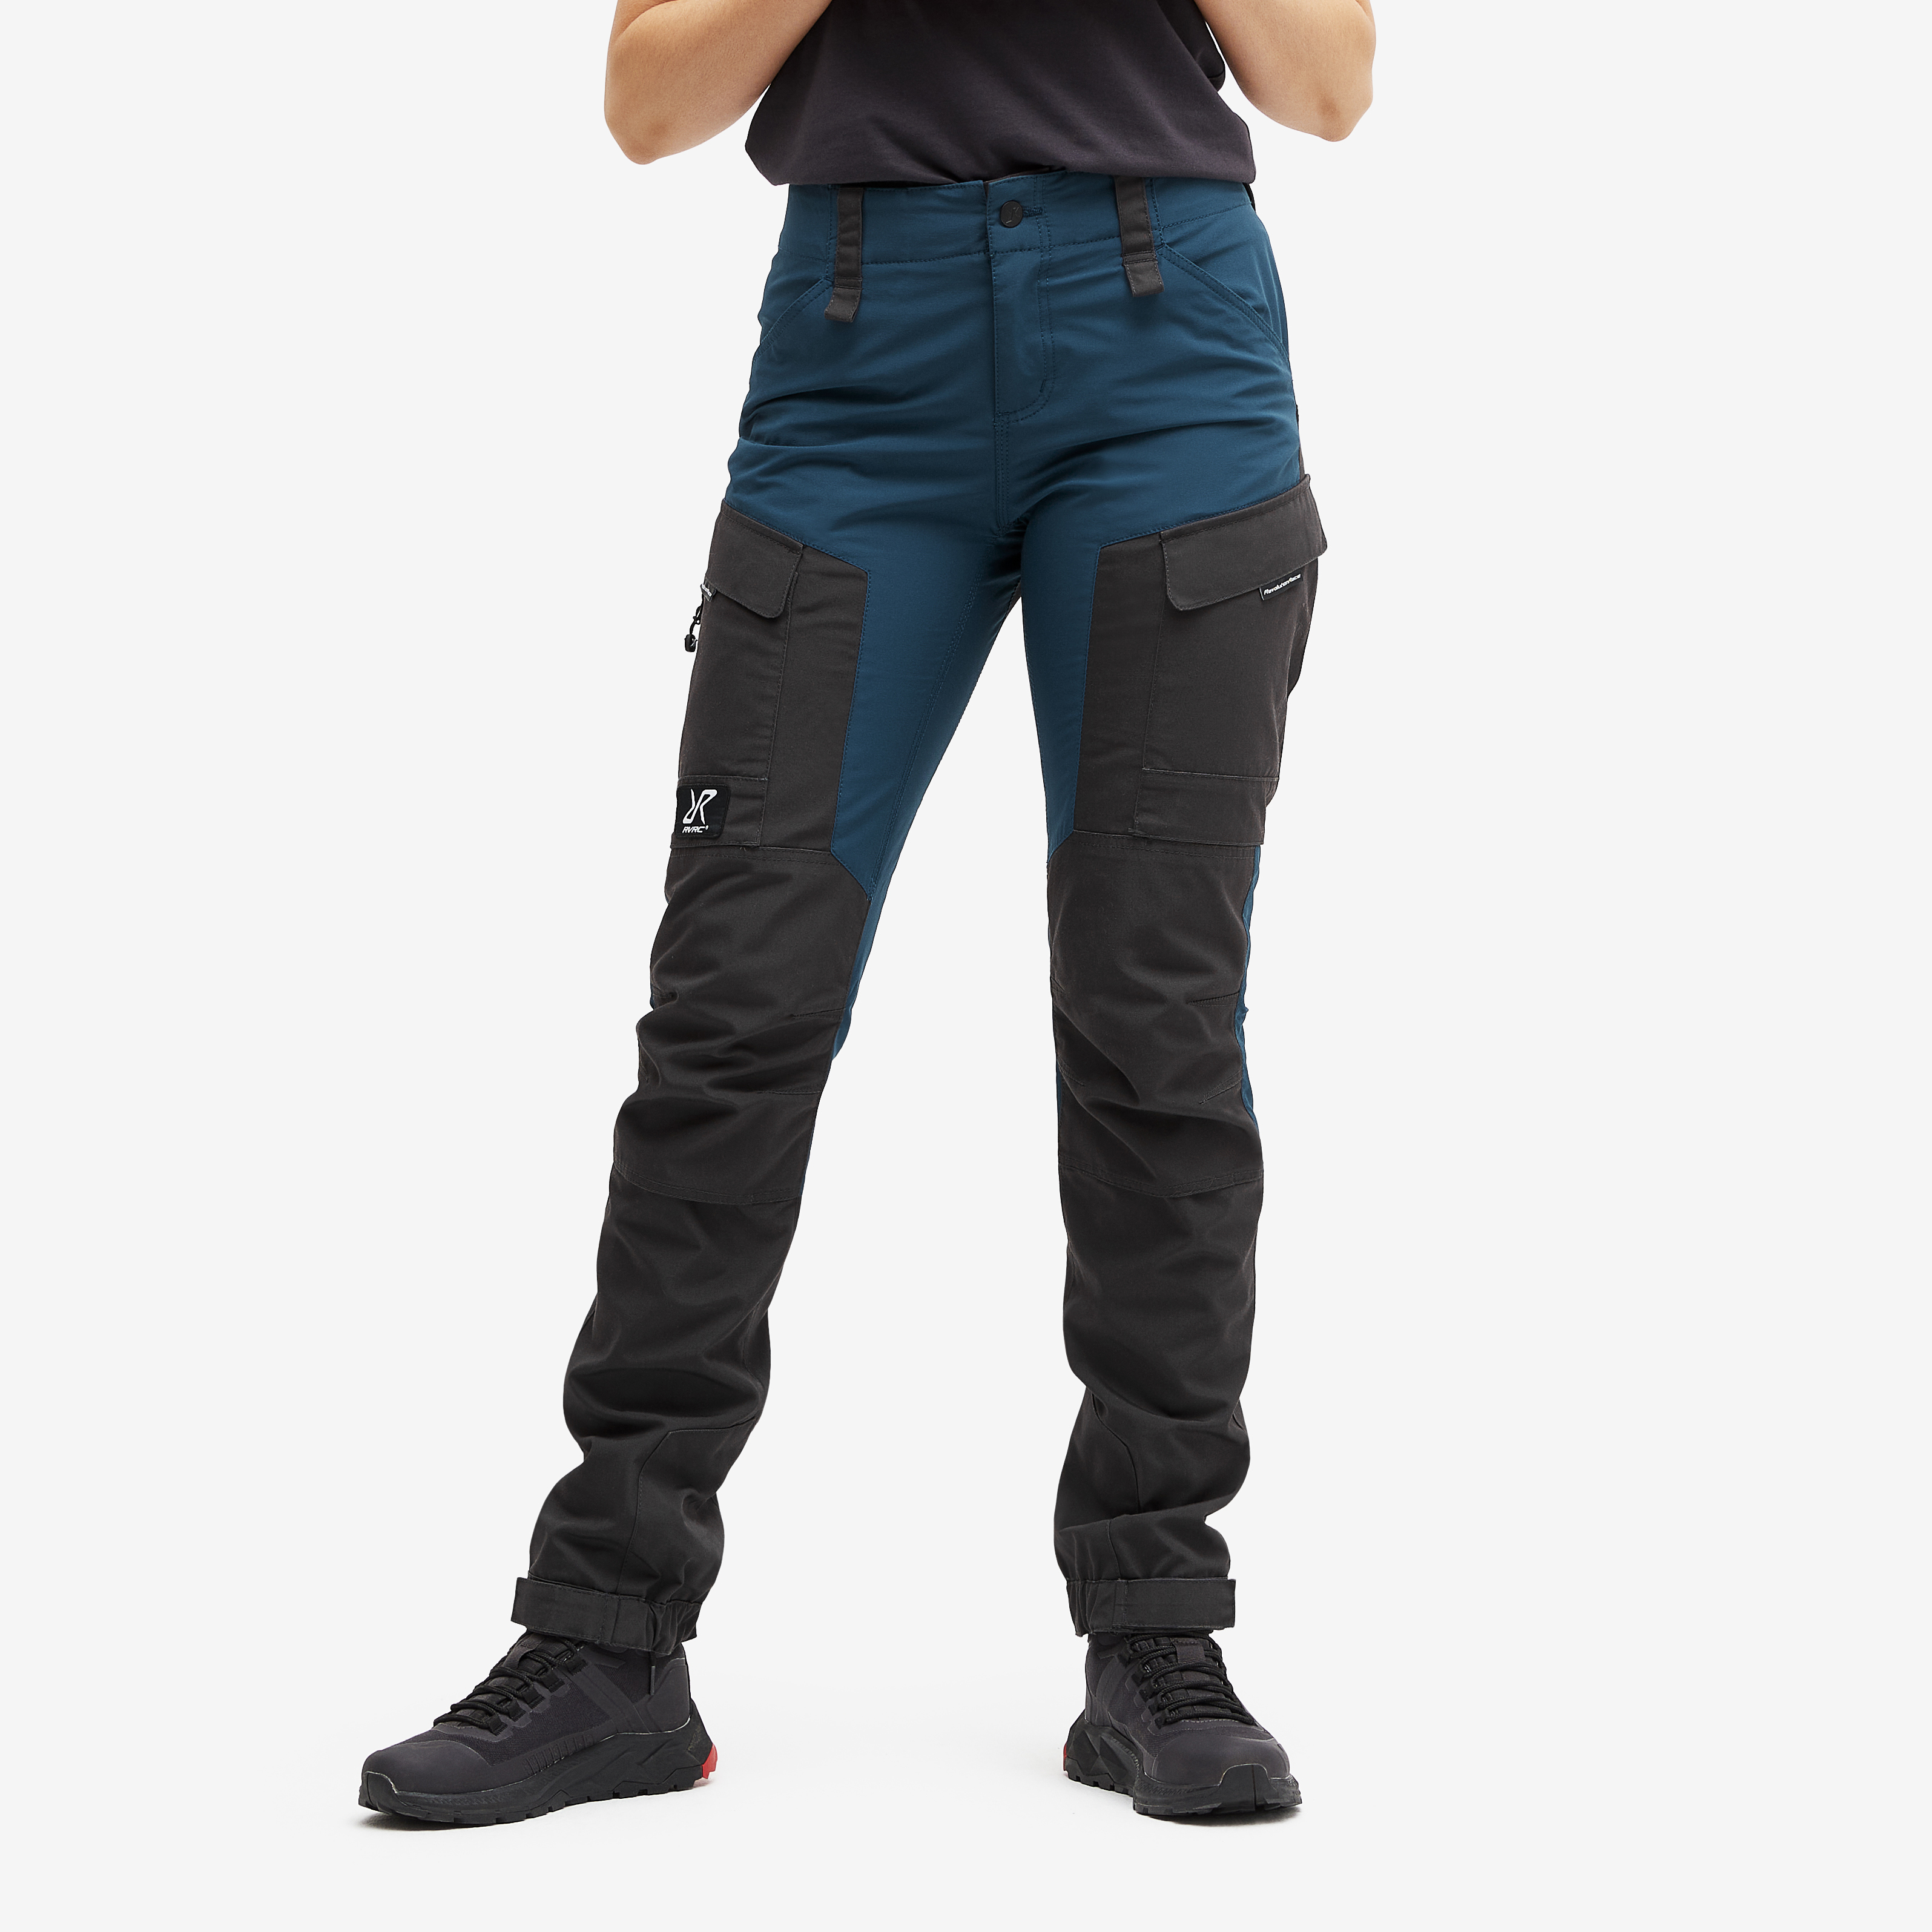 RVRC GP outdoorové kalhoty pro ženy v tmavě modré barvě